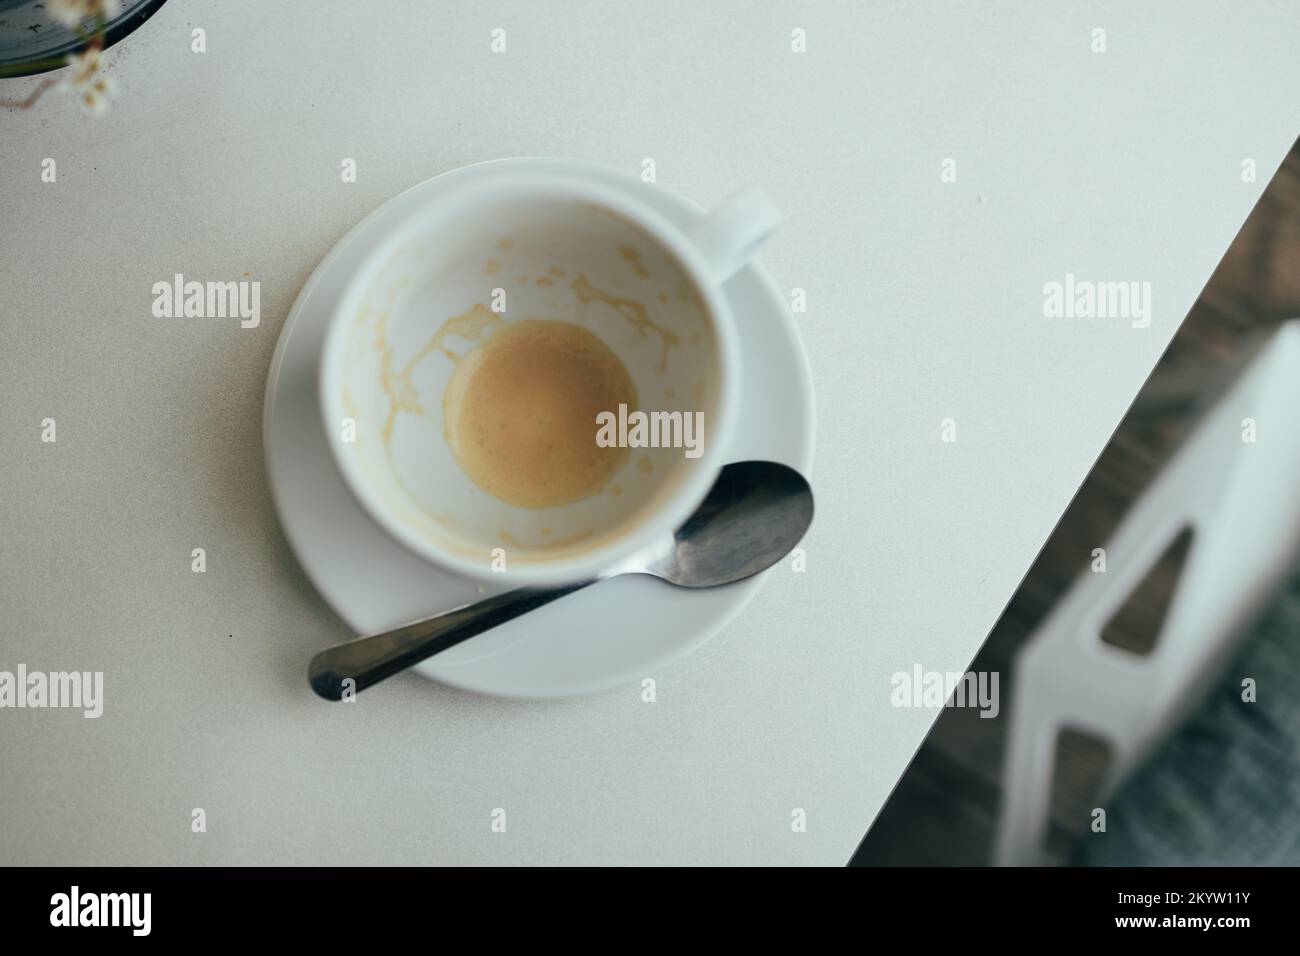 Tazza bianca vuota dopo il caffè espresso latte al bar, vista dall'alto Foto Stock